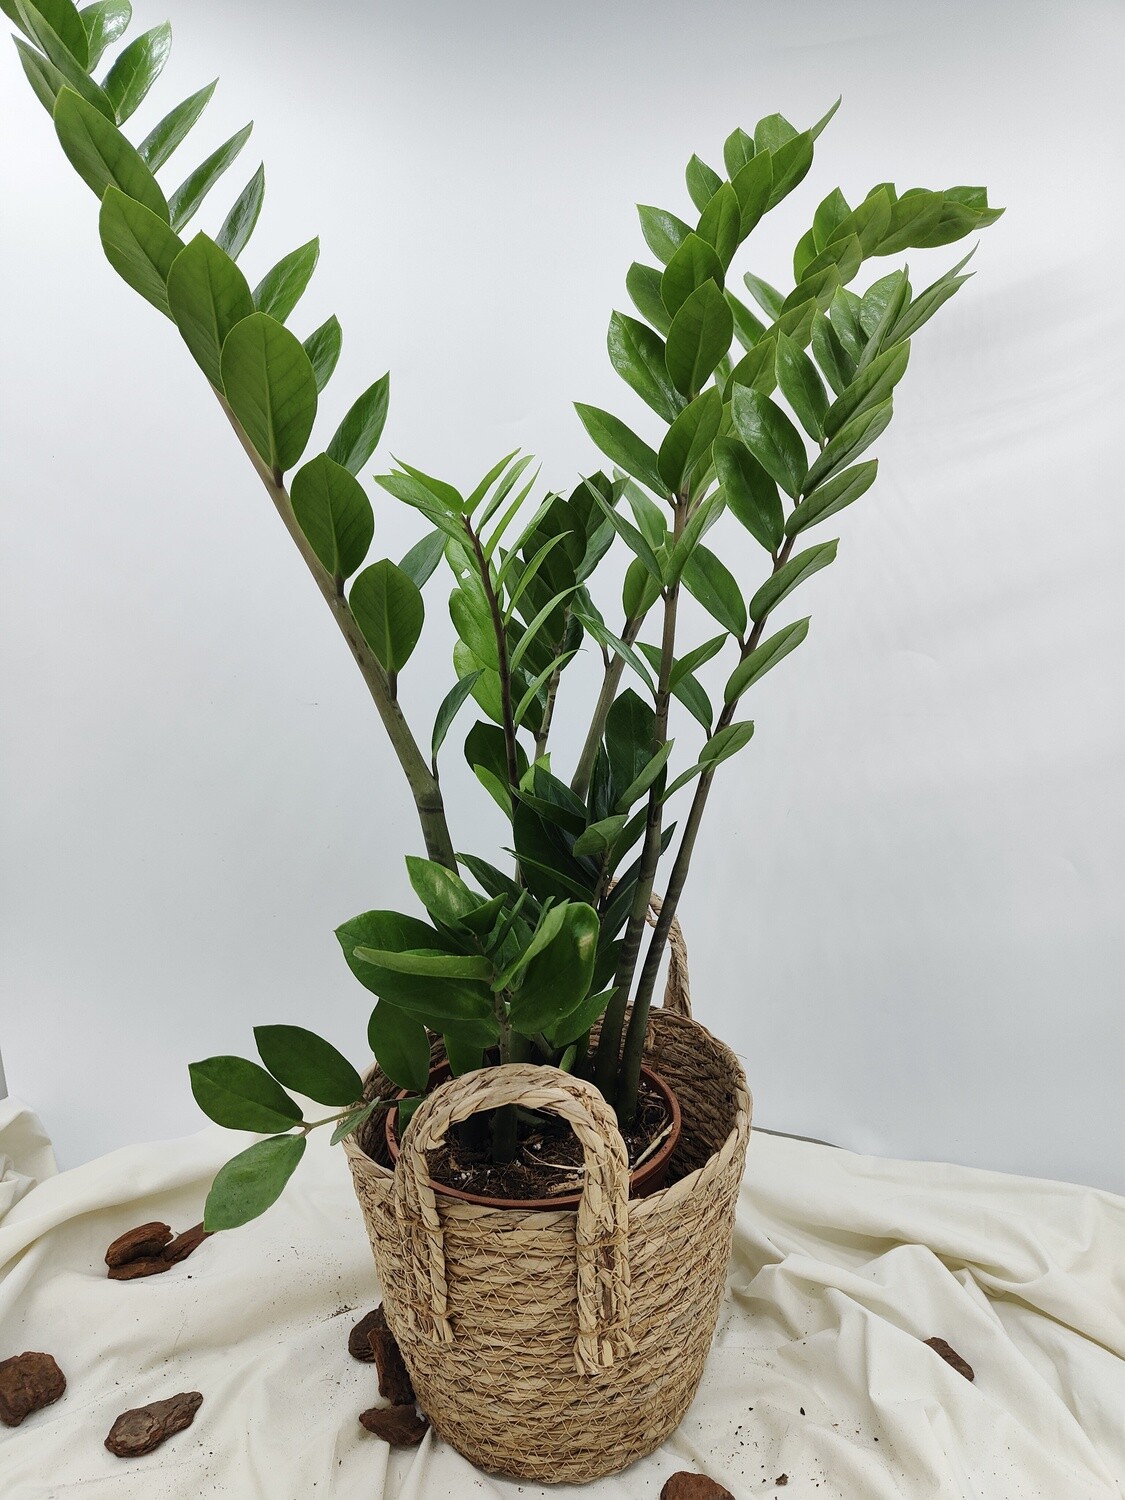 "AmaPlant Zamioculca" resistente como pocas e ideal para decorar cualquier espacio del hogar con sus hojas verdes brillantes 70 cm M17 (todoterreno) - Interior o exterior con sombra - ENVIO INCLUIDO